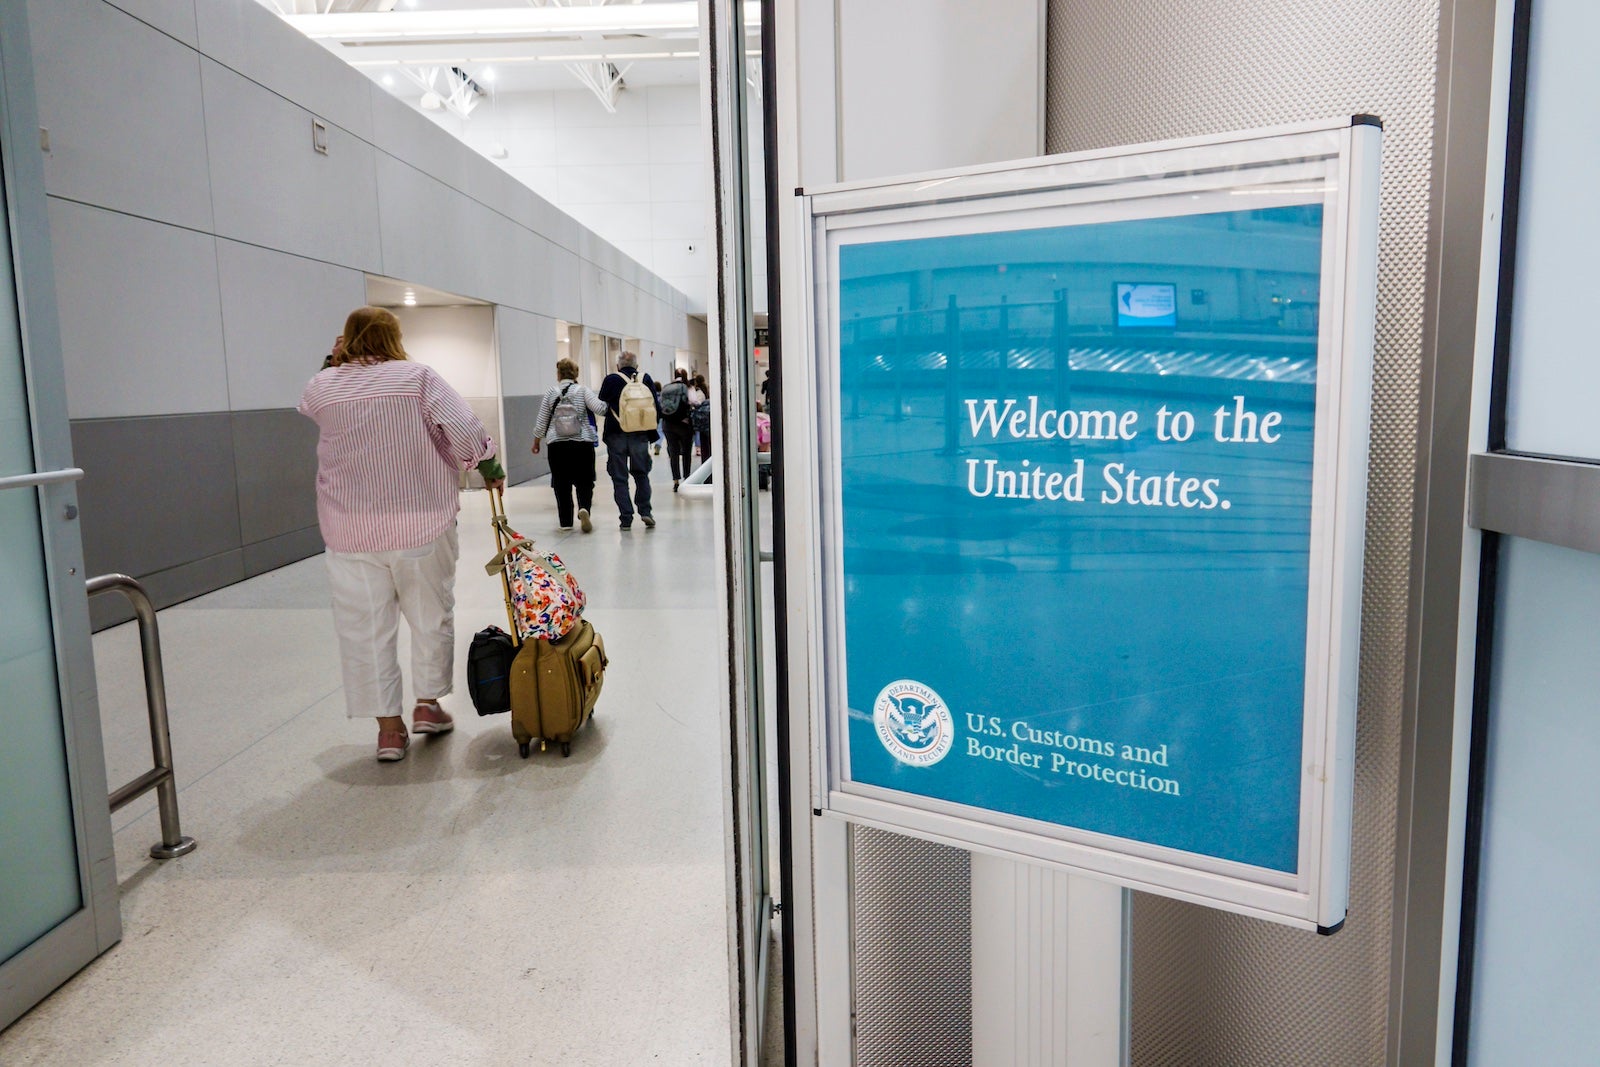 Global Entry vs TSA PreCheck - Application and Renewal - Recess 4